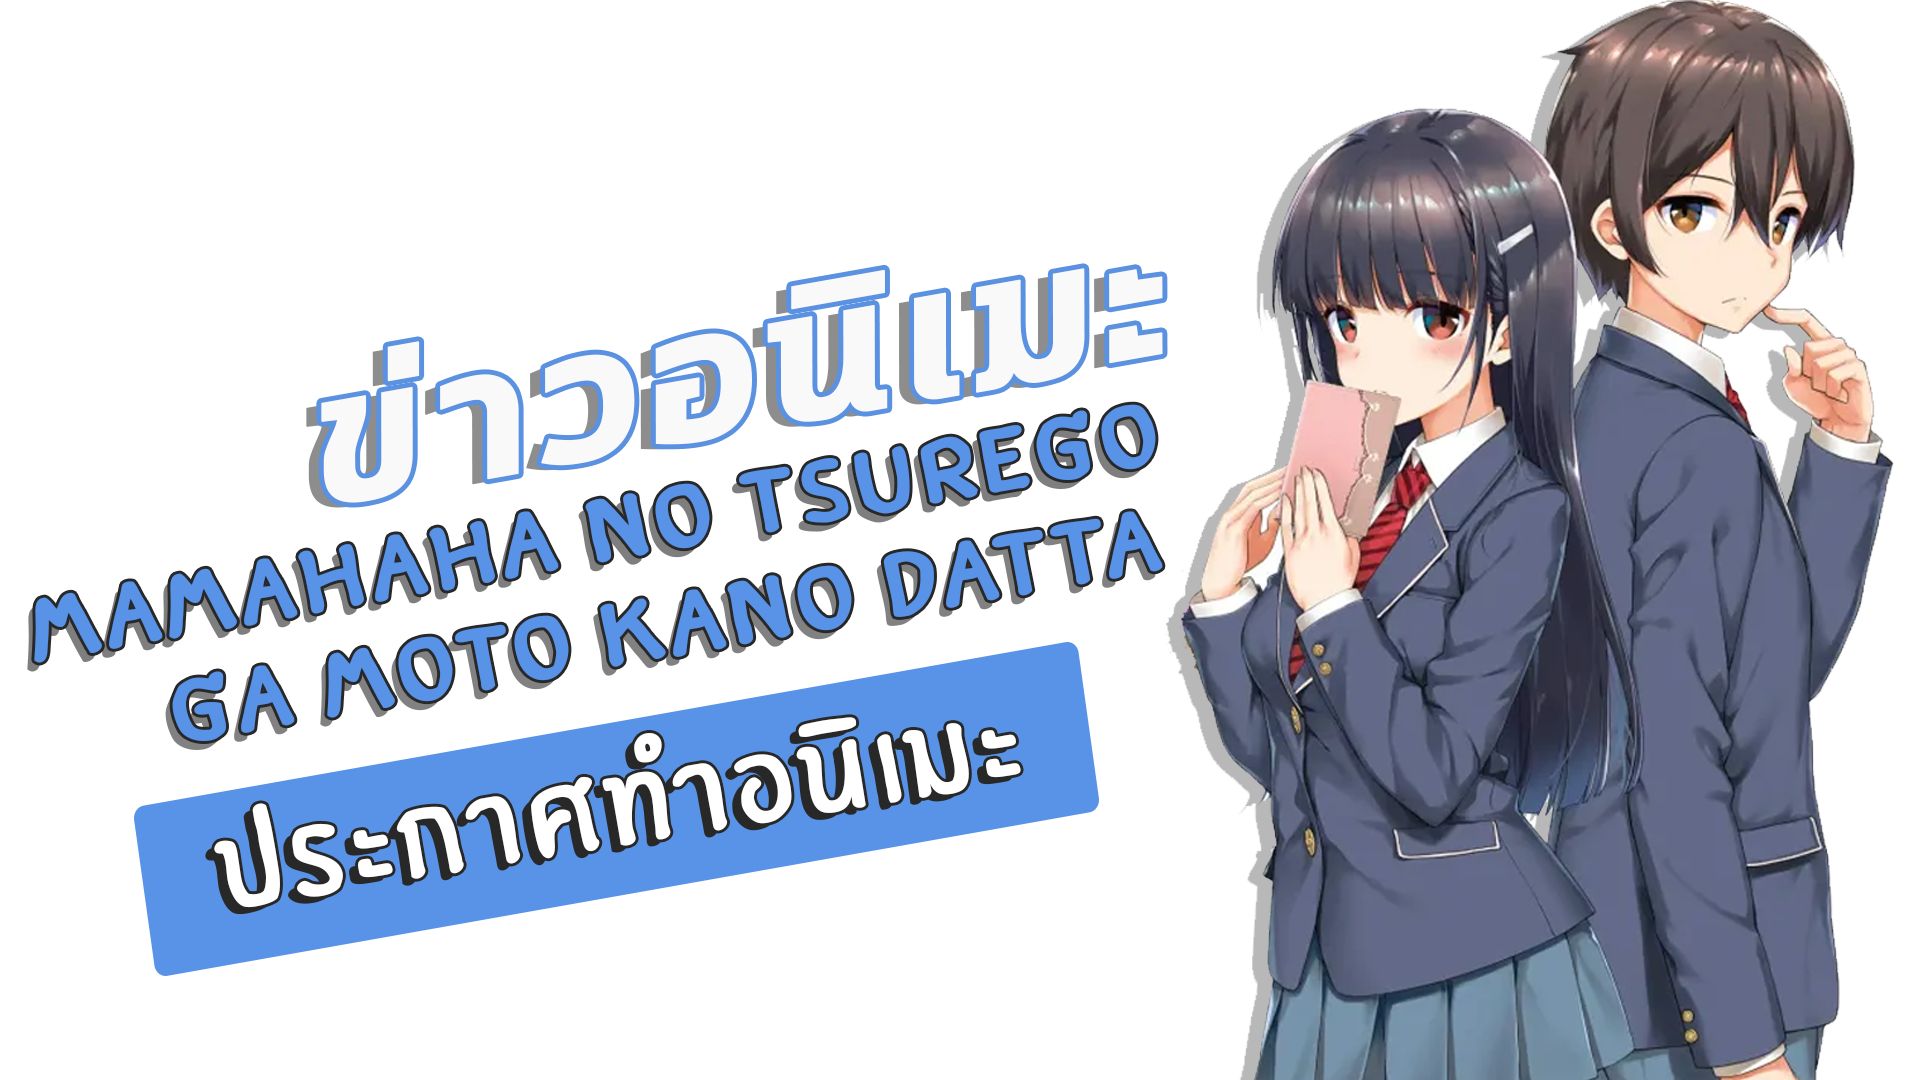 Aniradioplus - #NEWS: 'Mamahaha no Tsurego ga Moto Kano